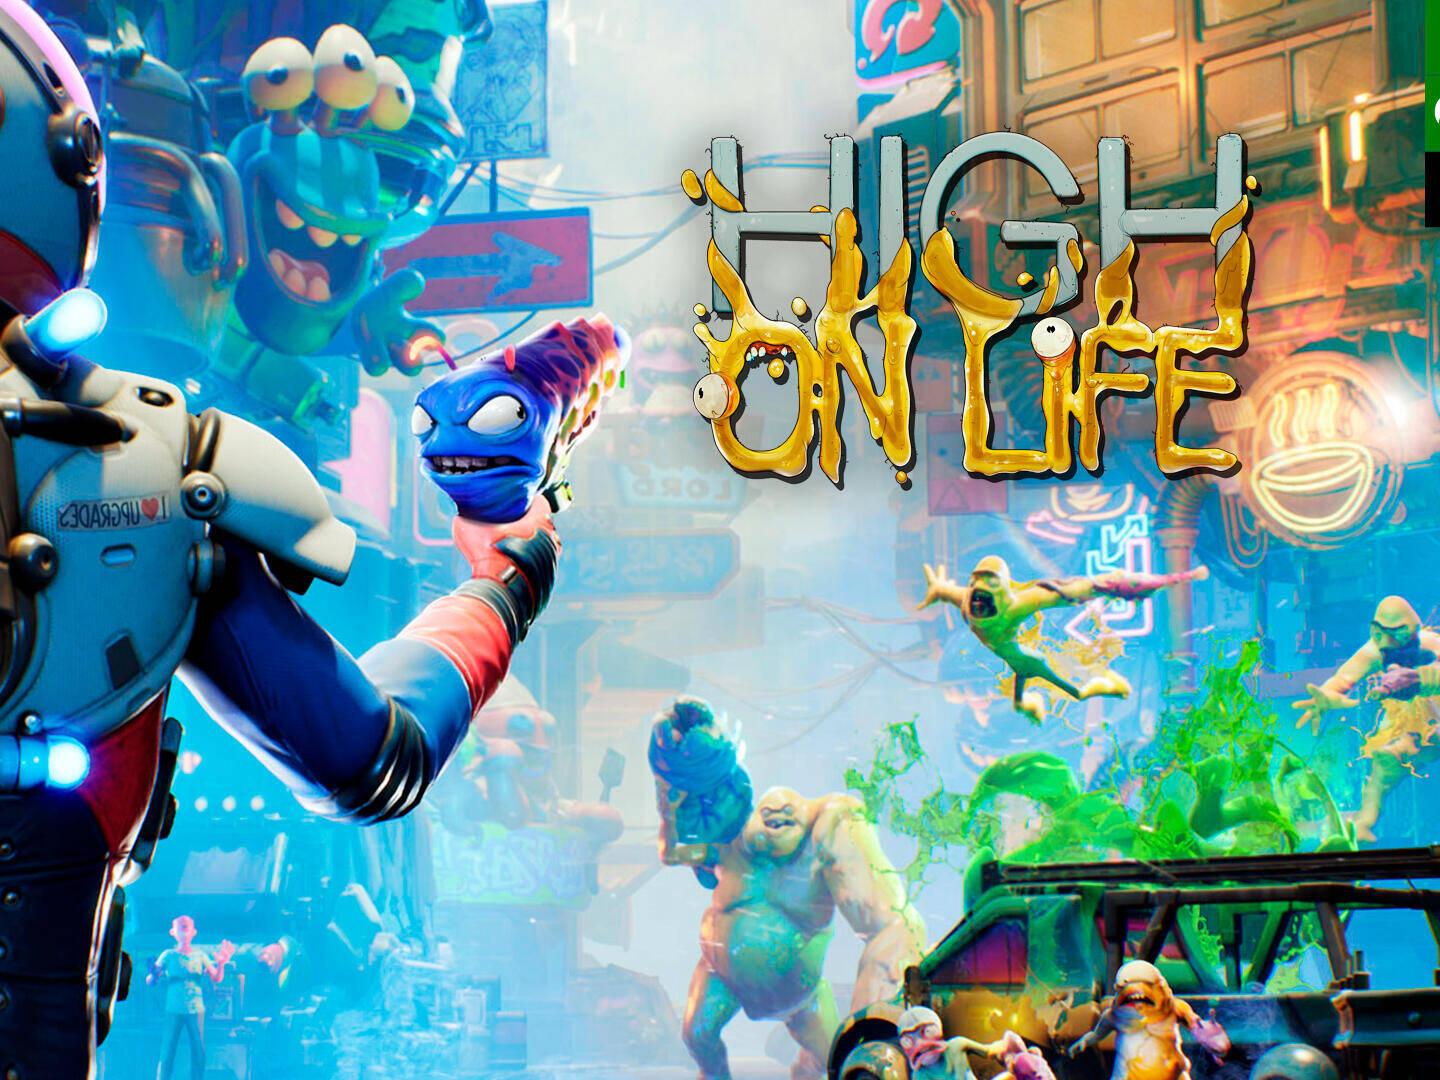 Análise: High on Life é engraçado e divertido - Última Ficha